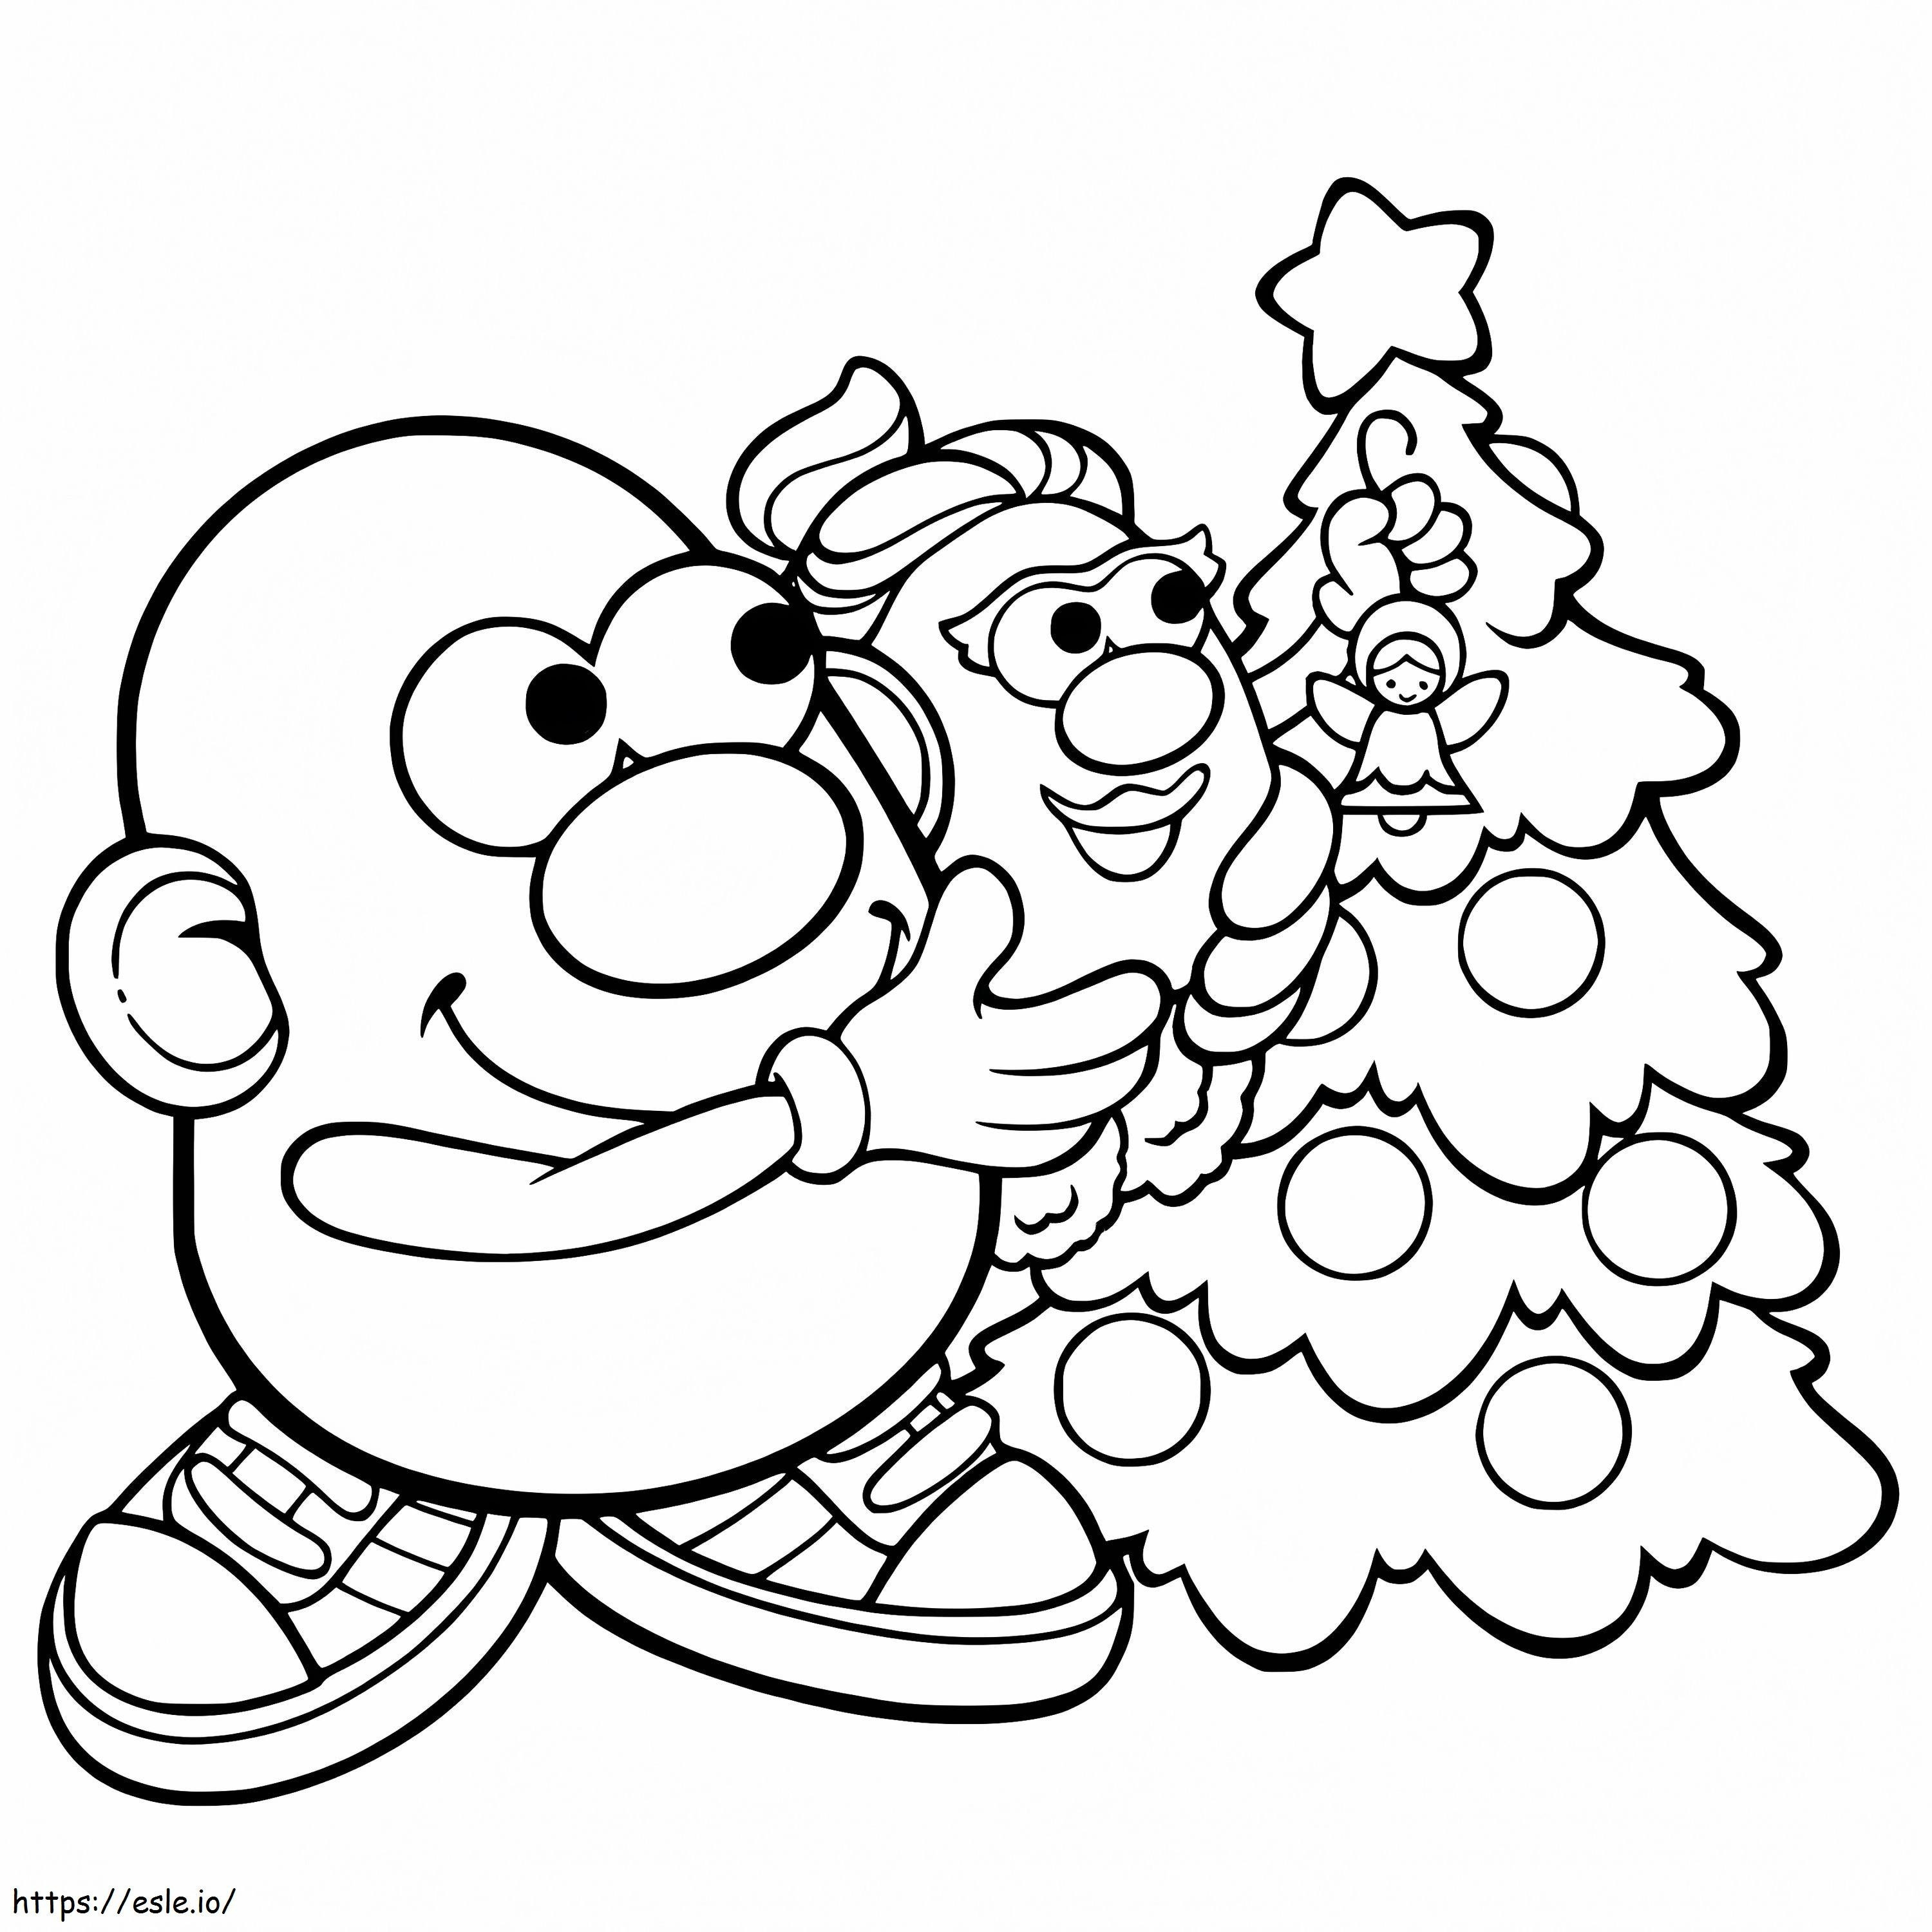 Mr. Potato Head an Weihnachten ausmalbilder